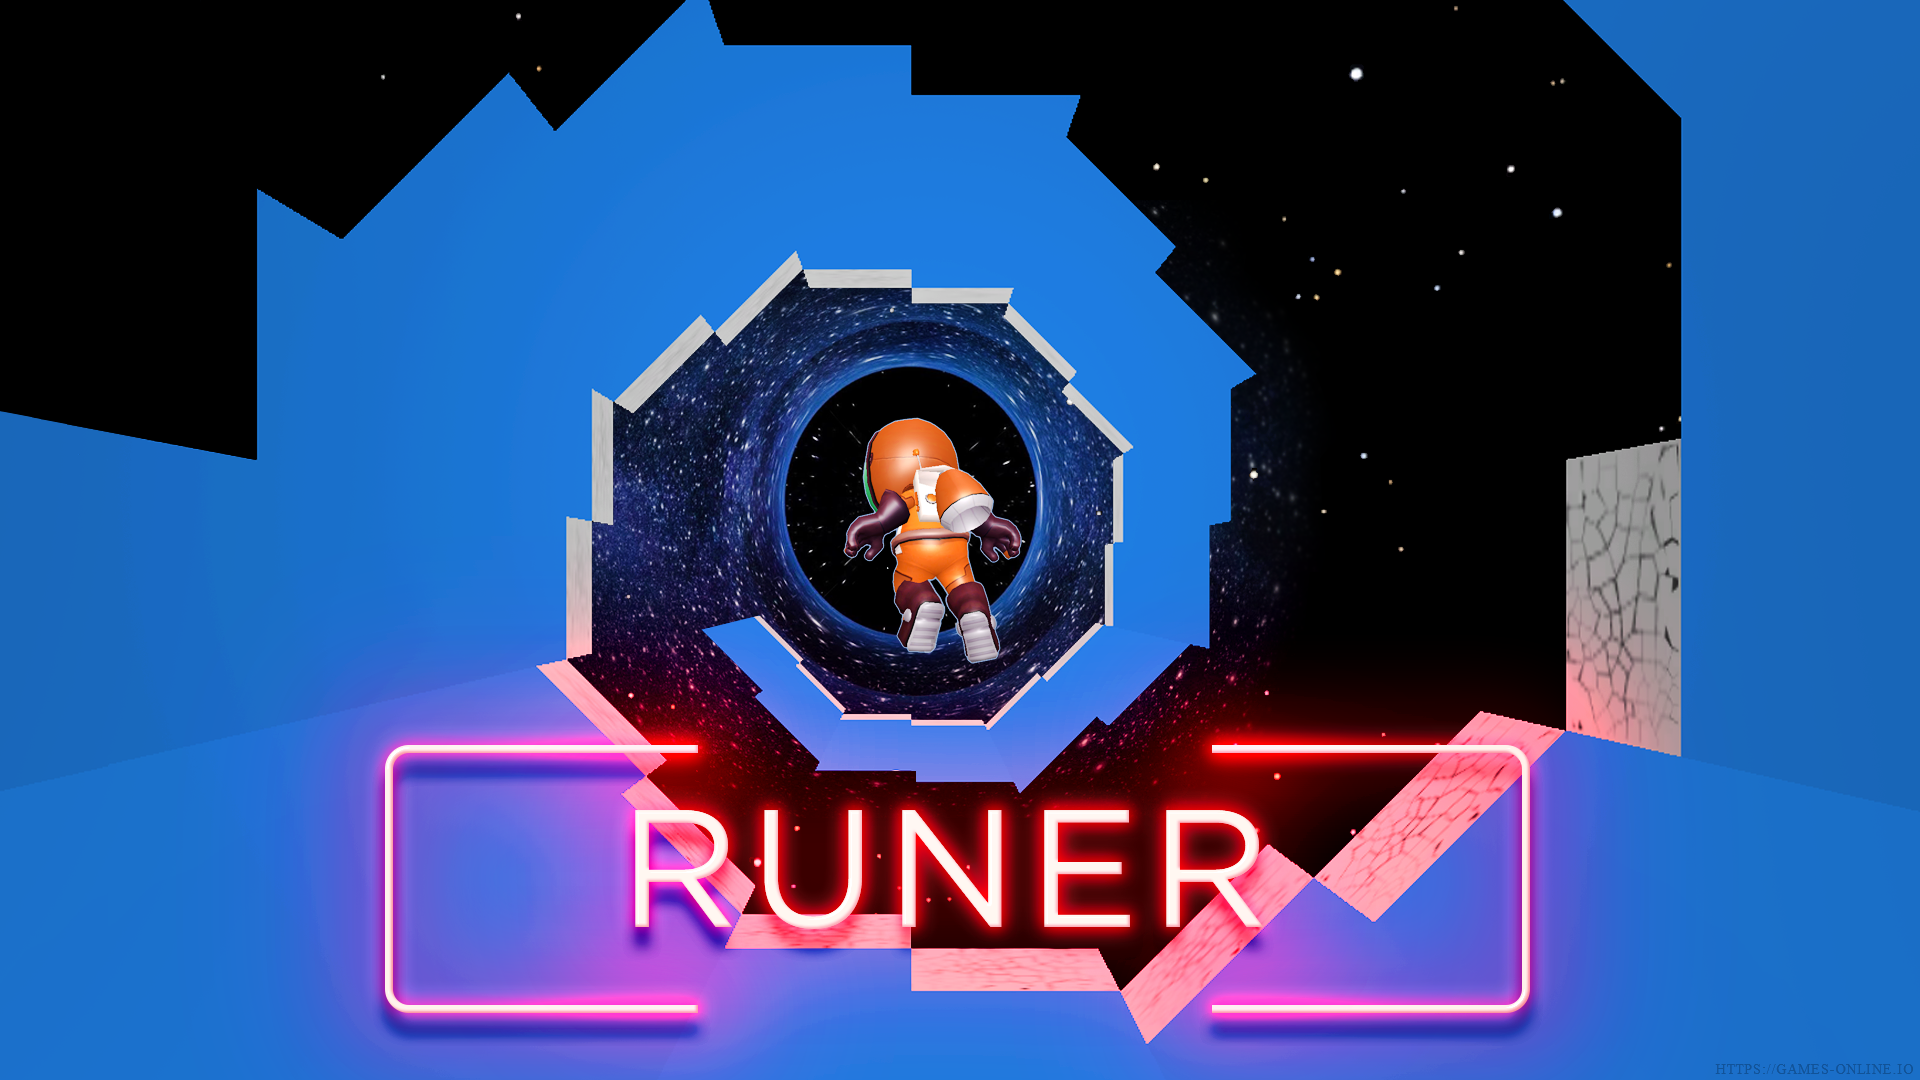 run 3 game online